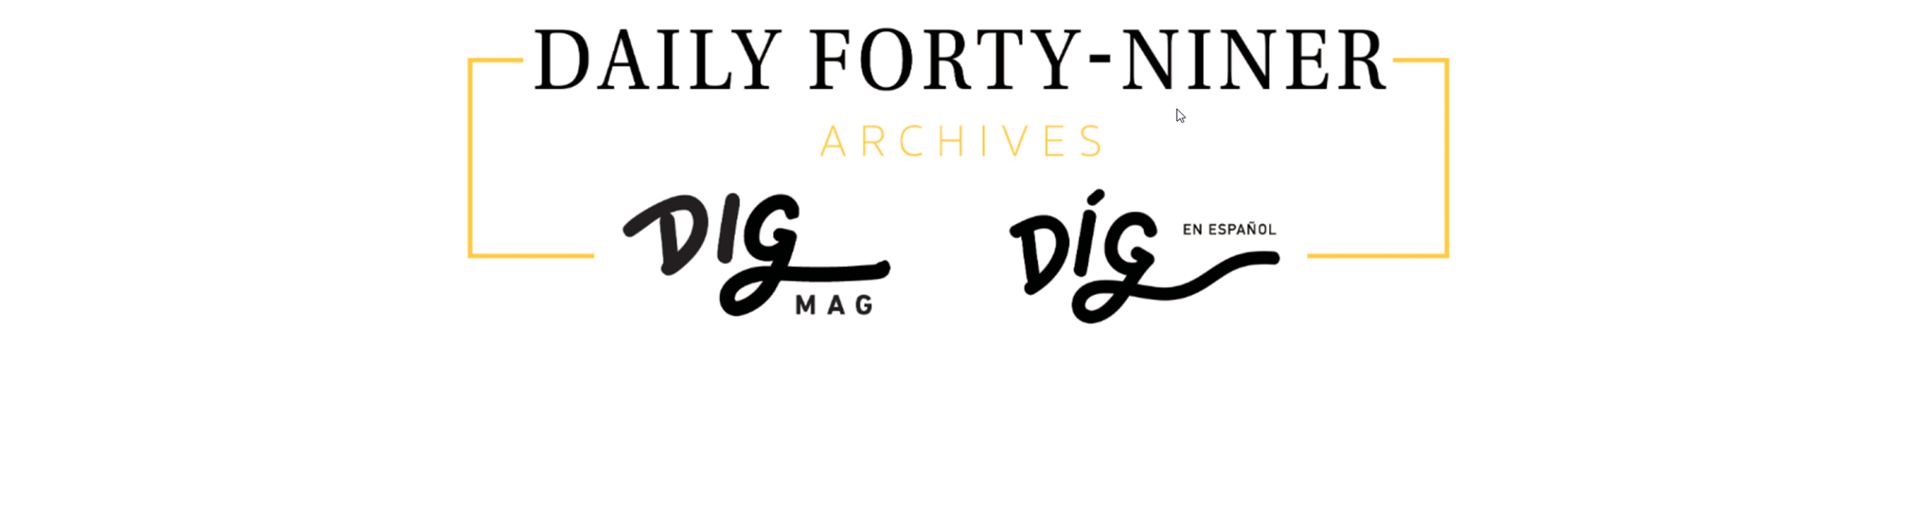 Daily Forty-Niner/DIG Mag/Díg en Español Archive